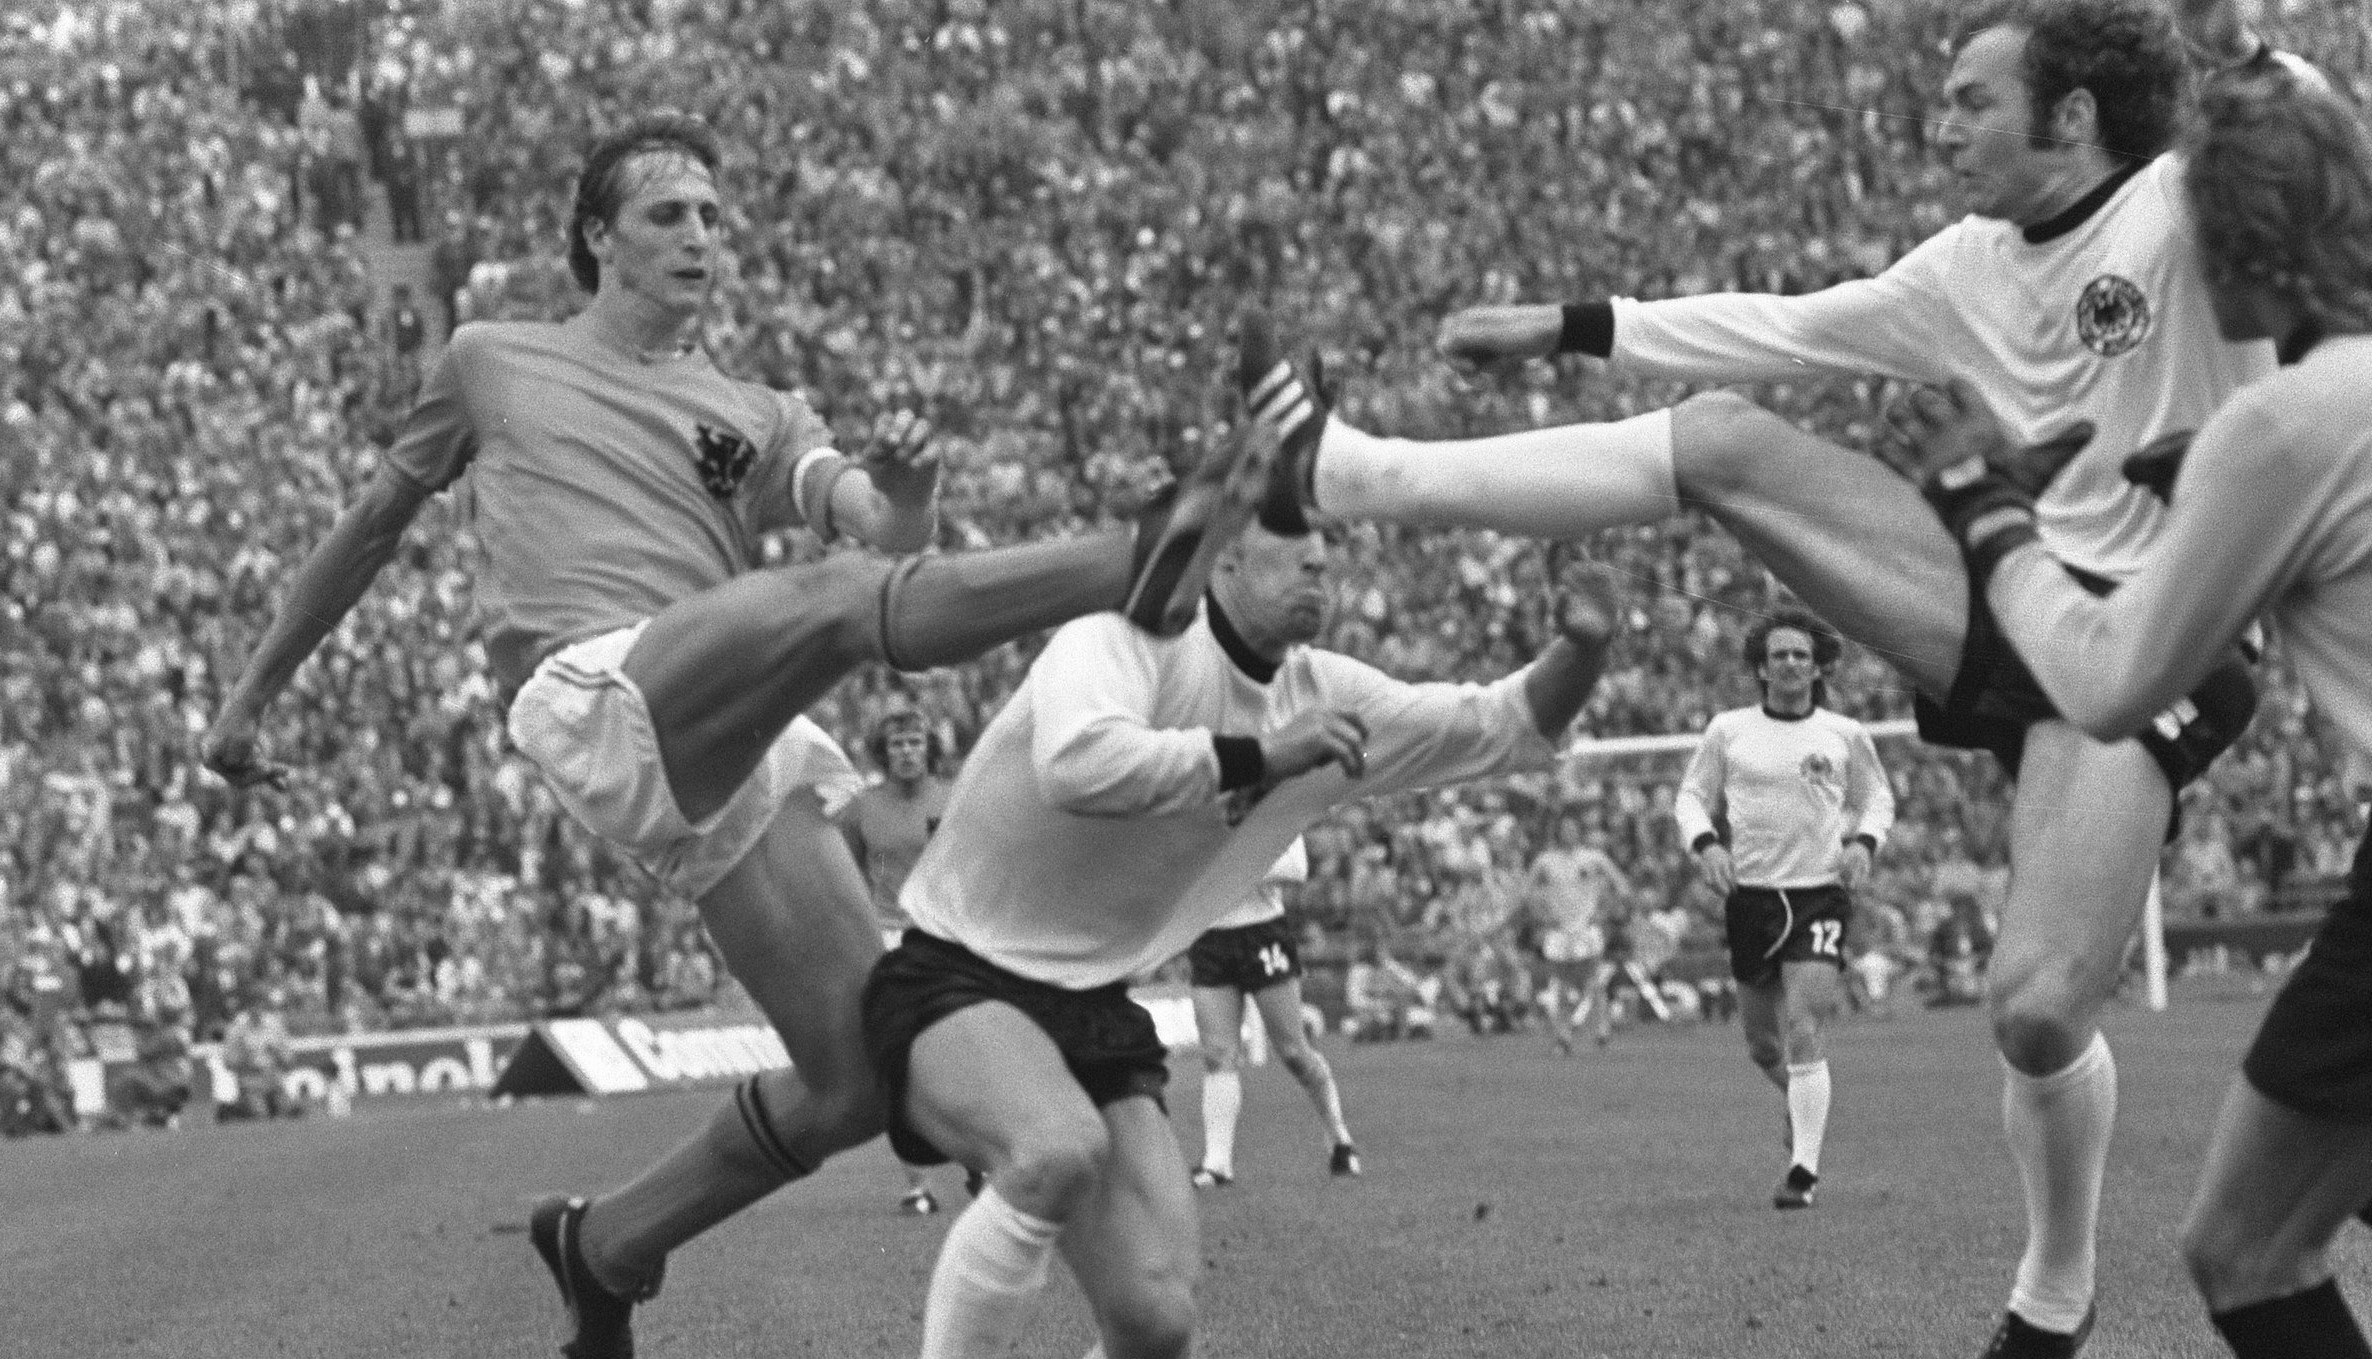 Final de la Copa Mundial de la FIFA 1974, Países Bajos 1-2 Alemania Occidental